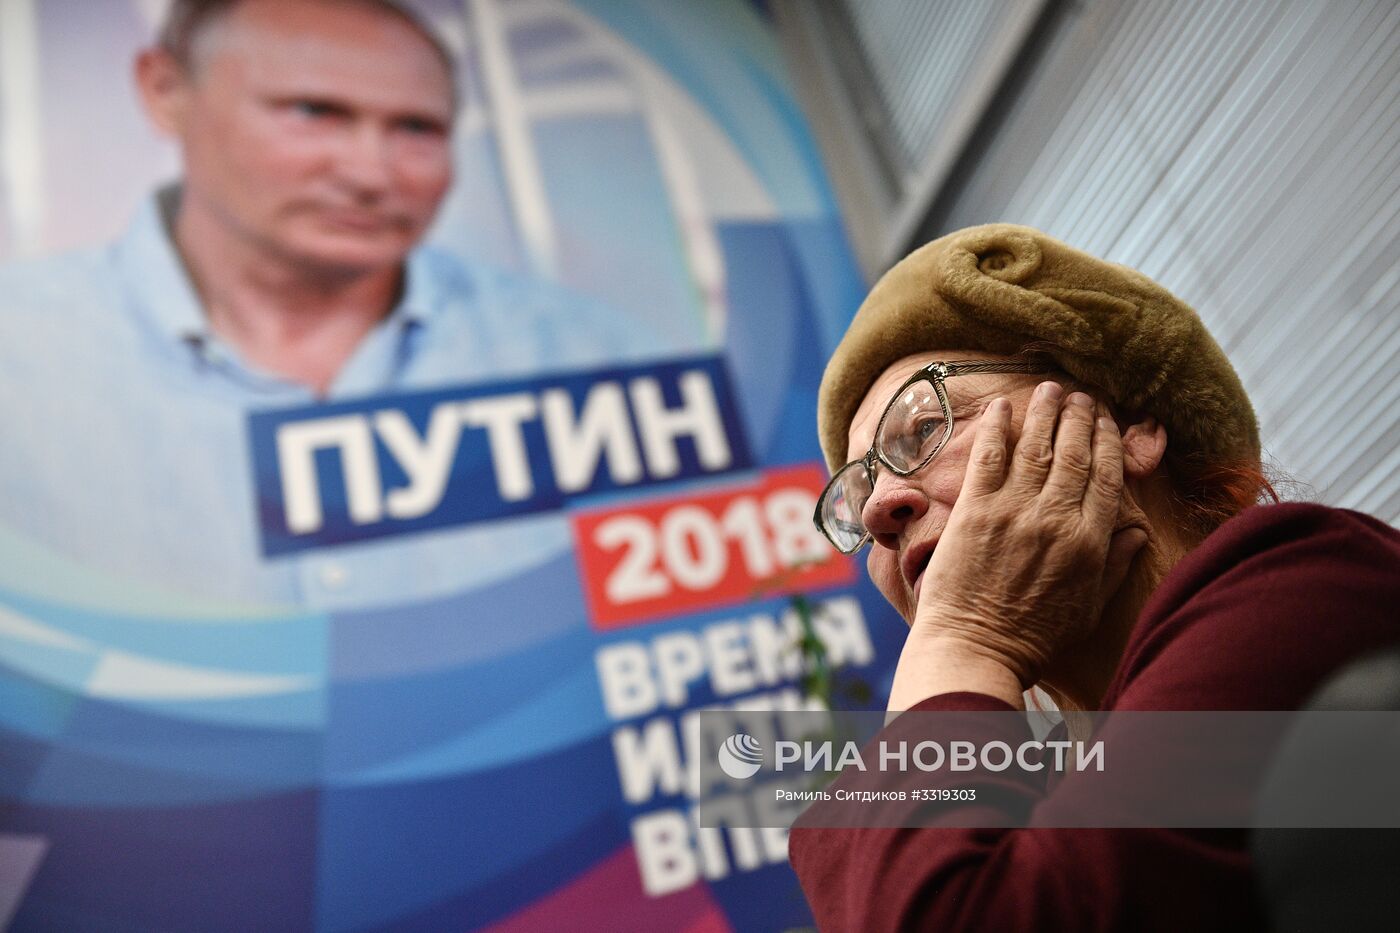 Общественная приемная избирательного штаба кандидата в президенты РФ В. Путина в Москве